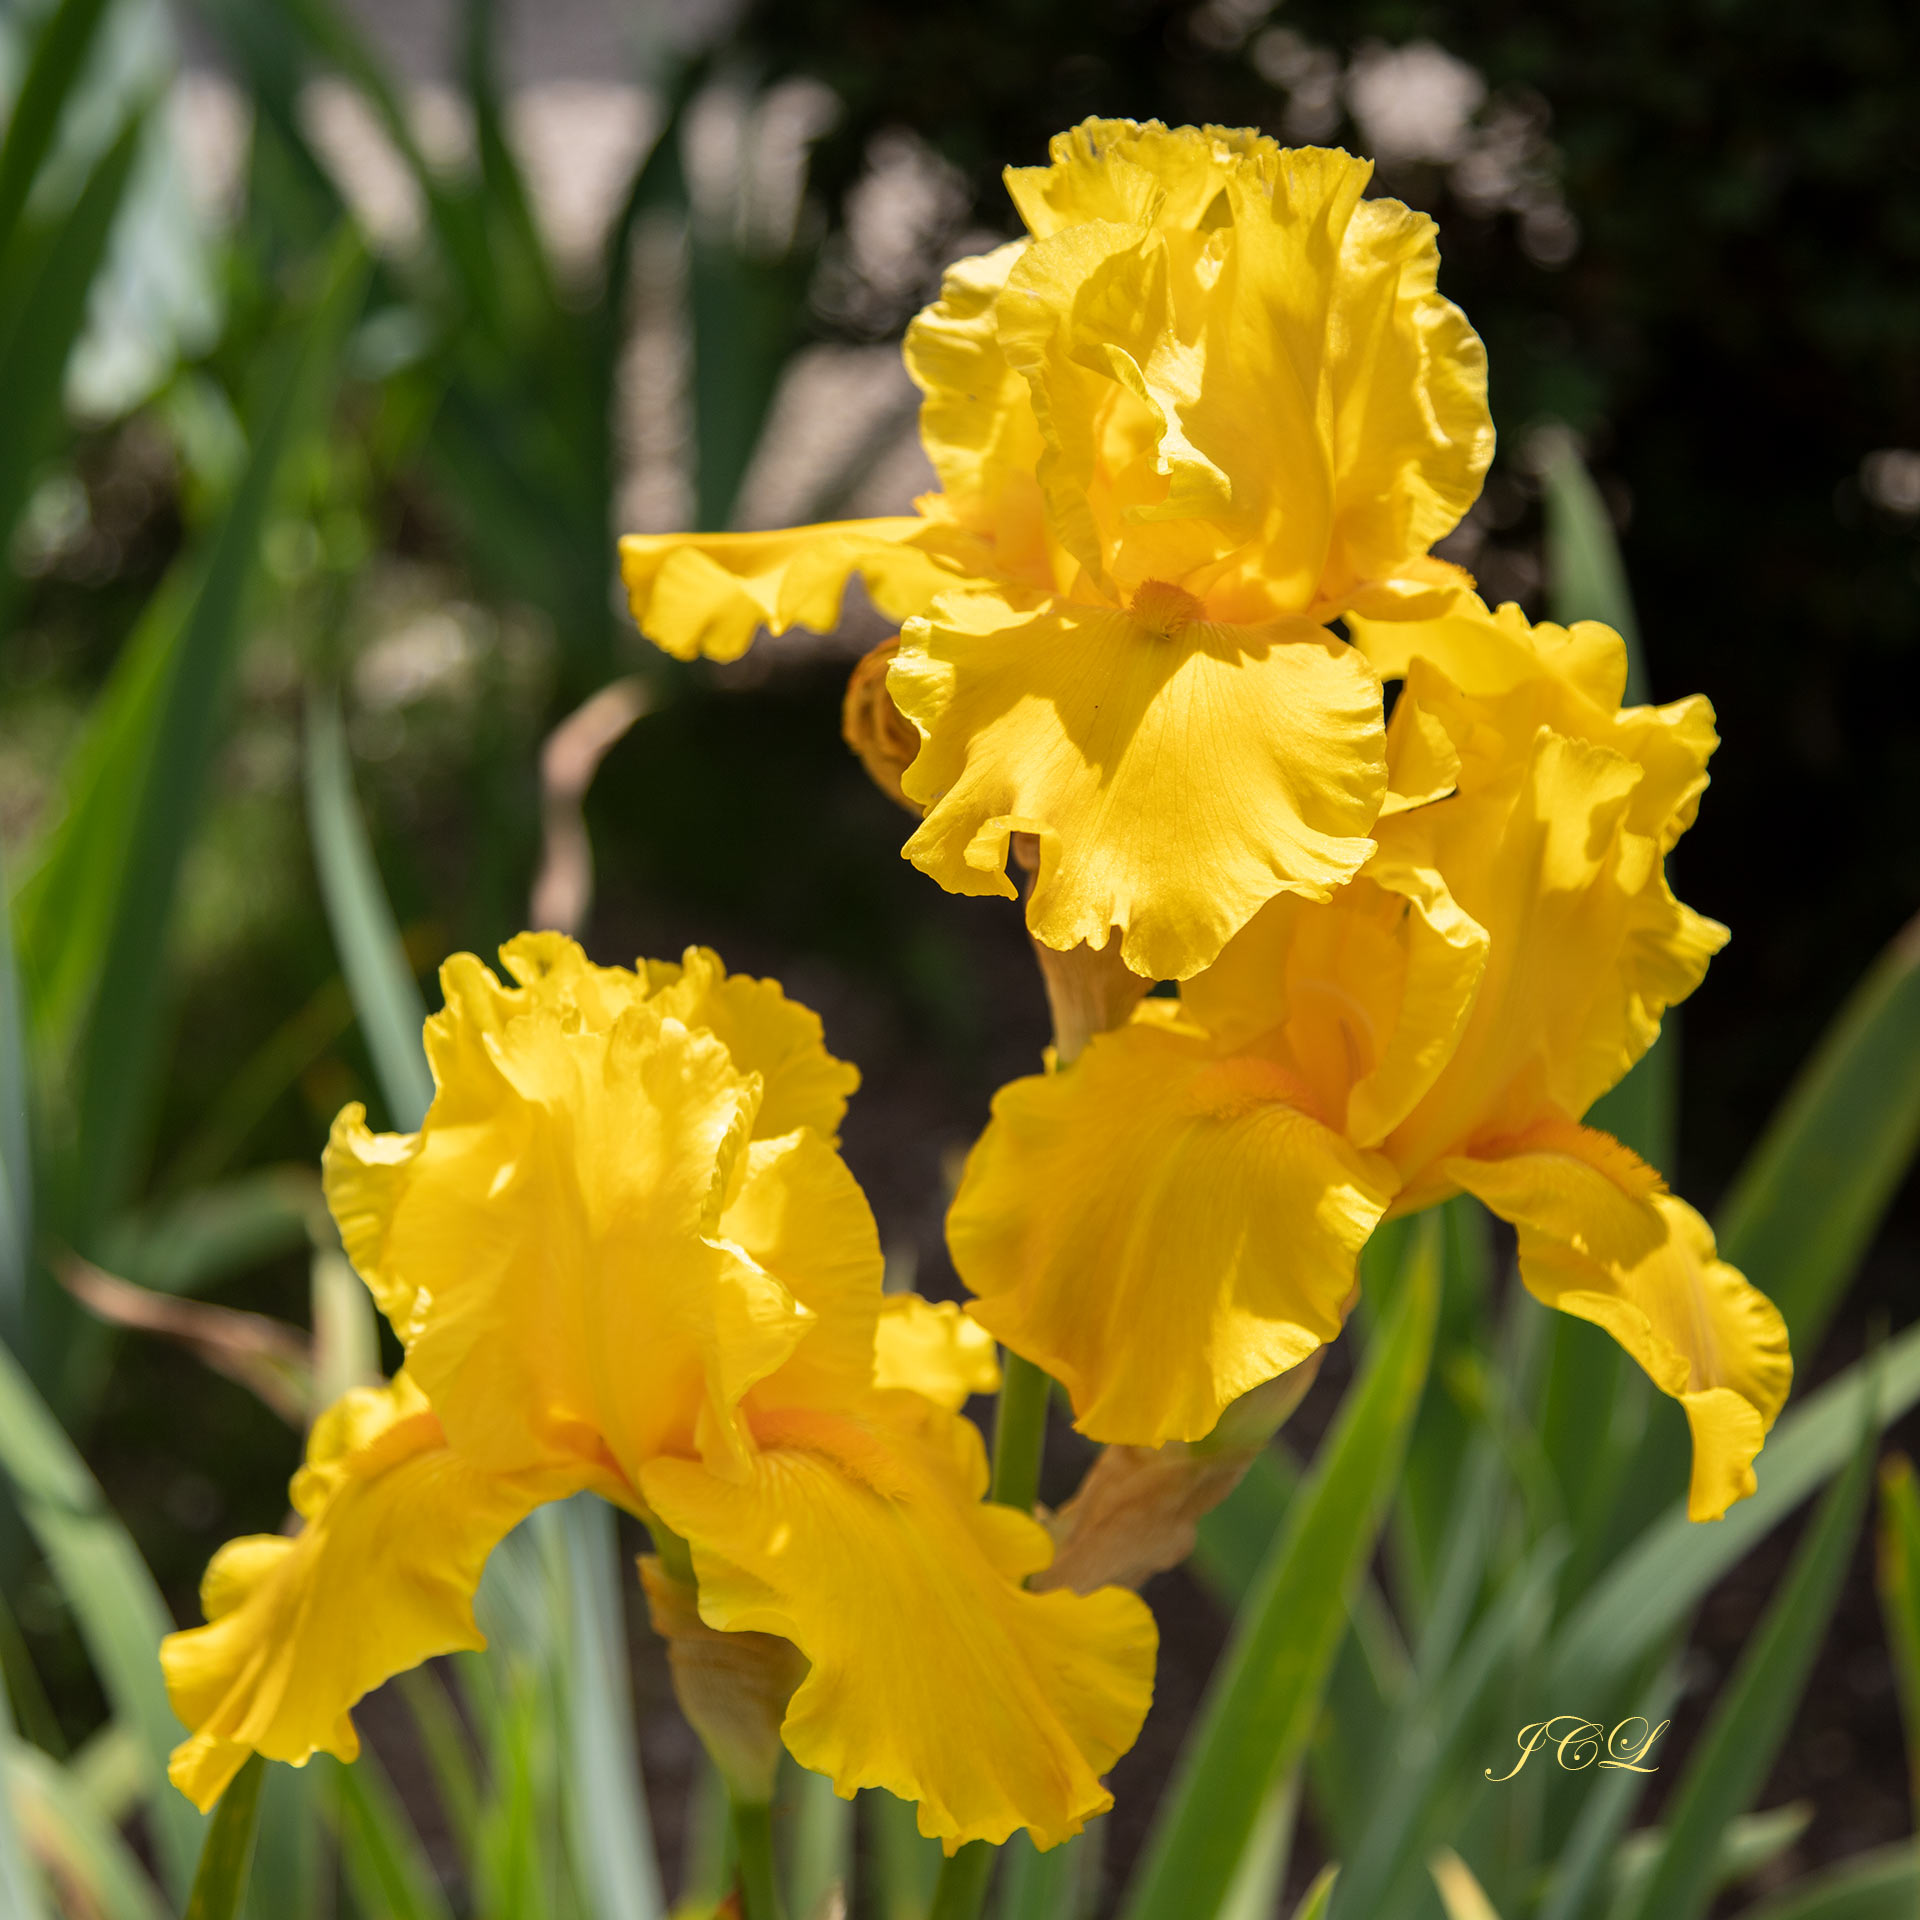 Magnifique iris jaune du Parc de Bagatelle.